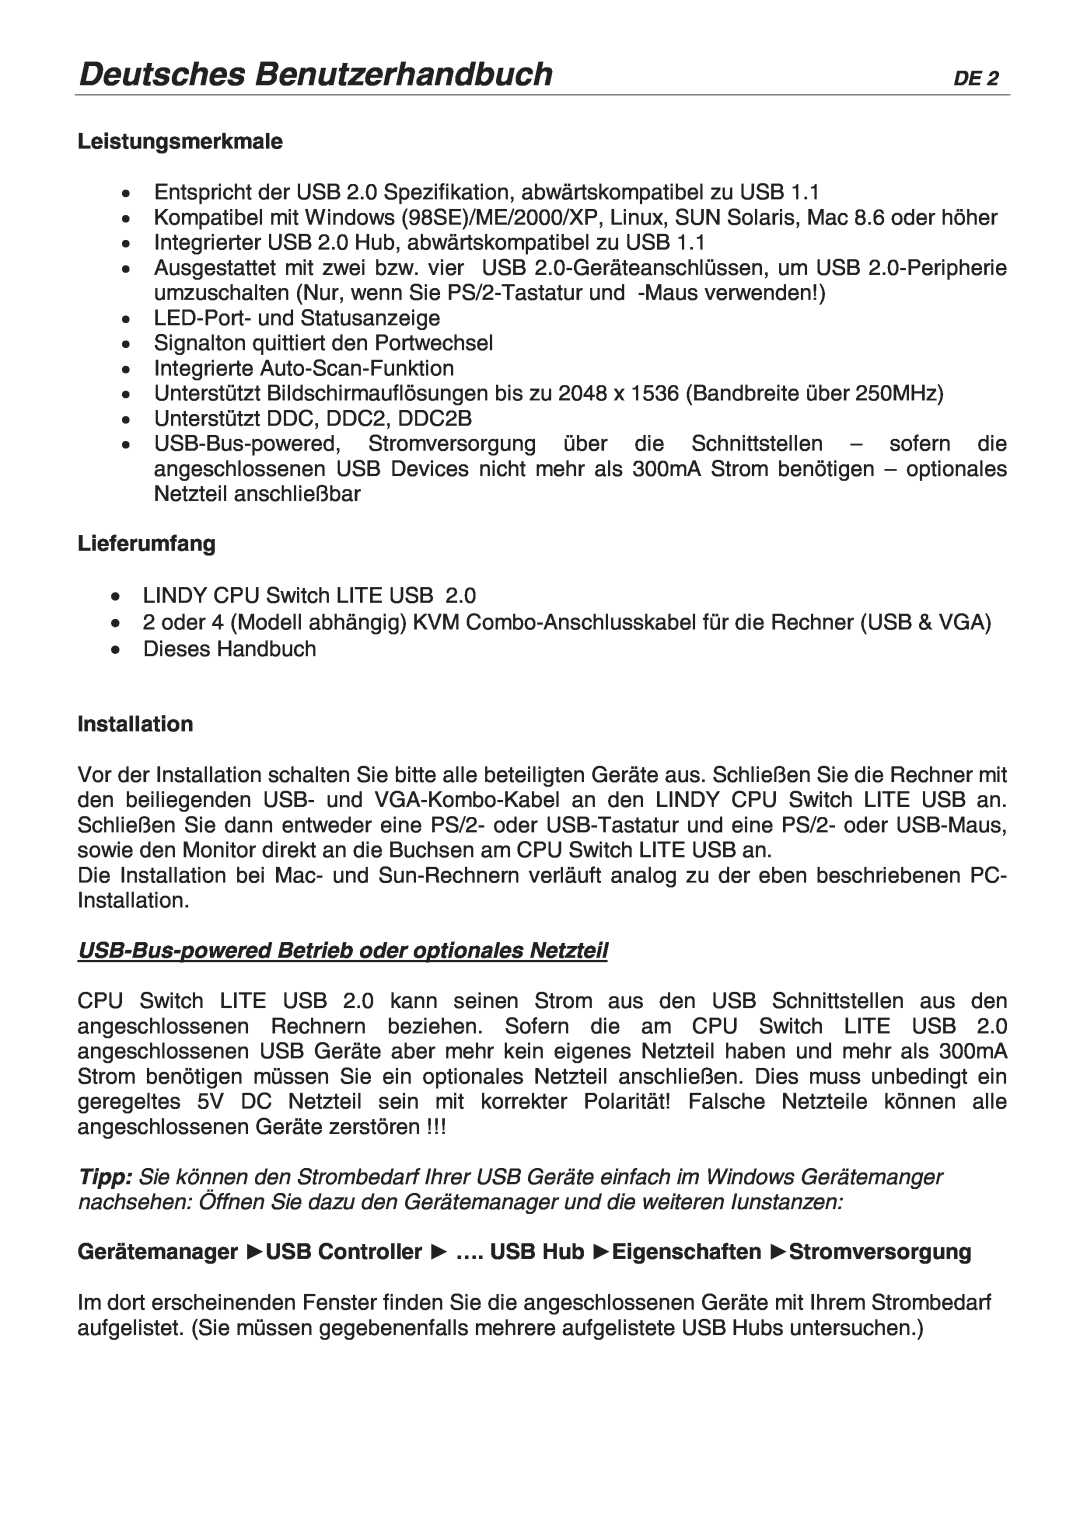 Lindy 32825, 32856 user manual Deutsches Benutzerhandbuch, Leistungsmerkmale, Lieferumfang, Installation 